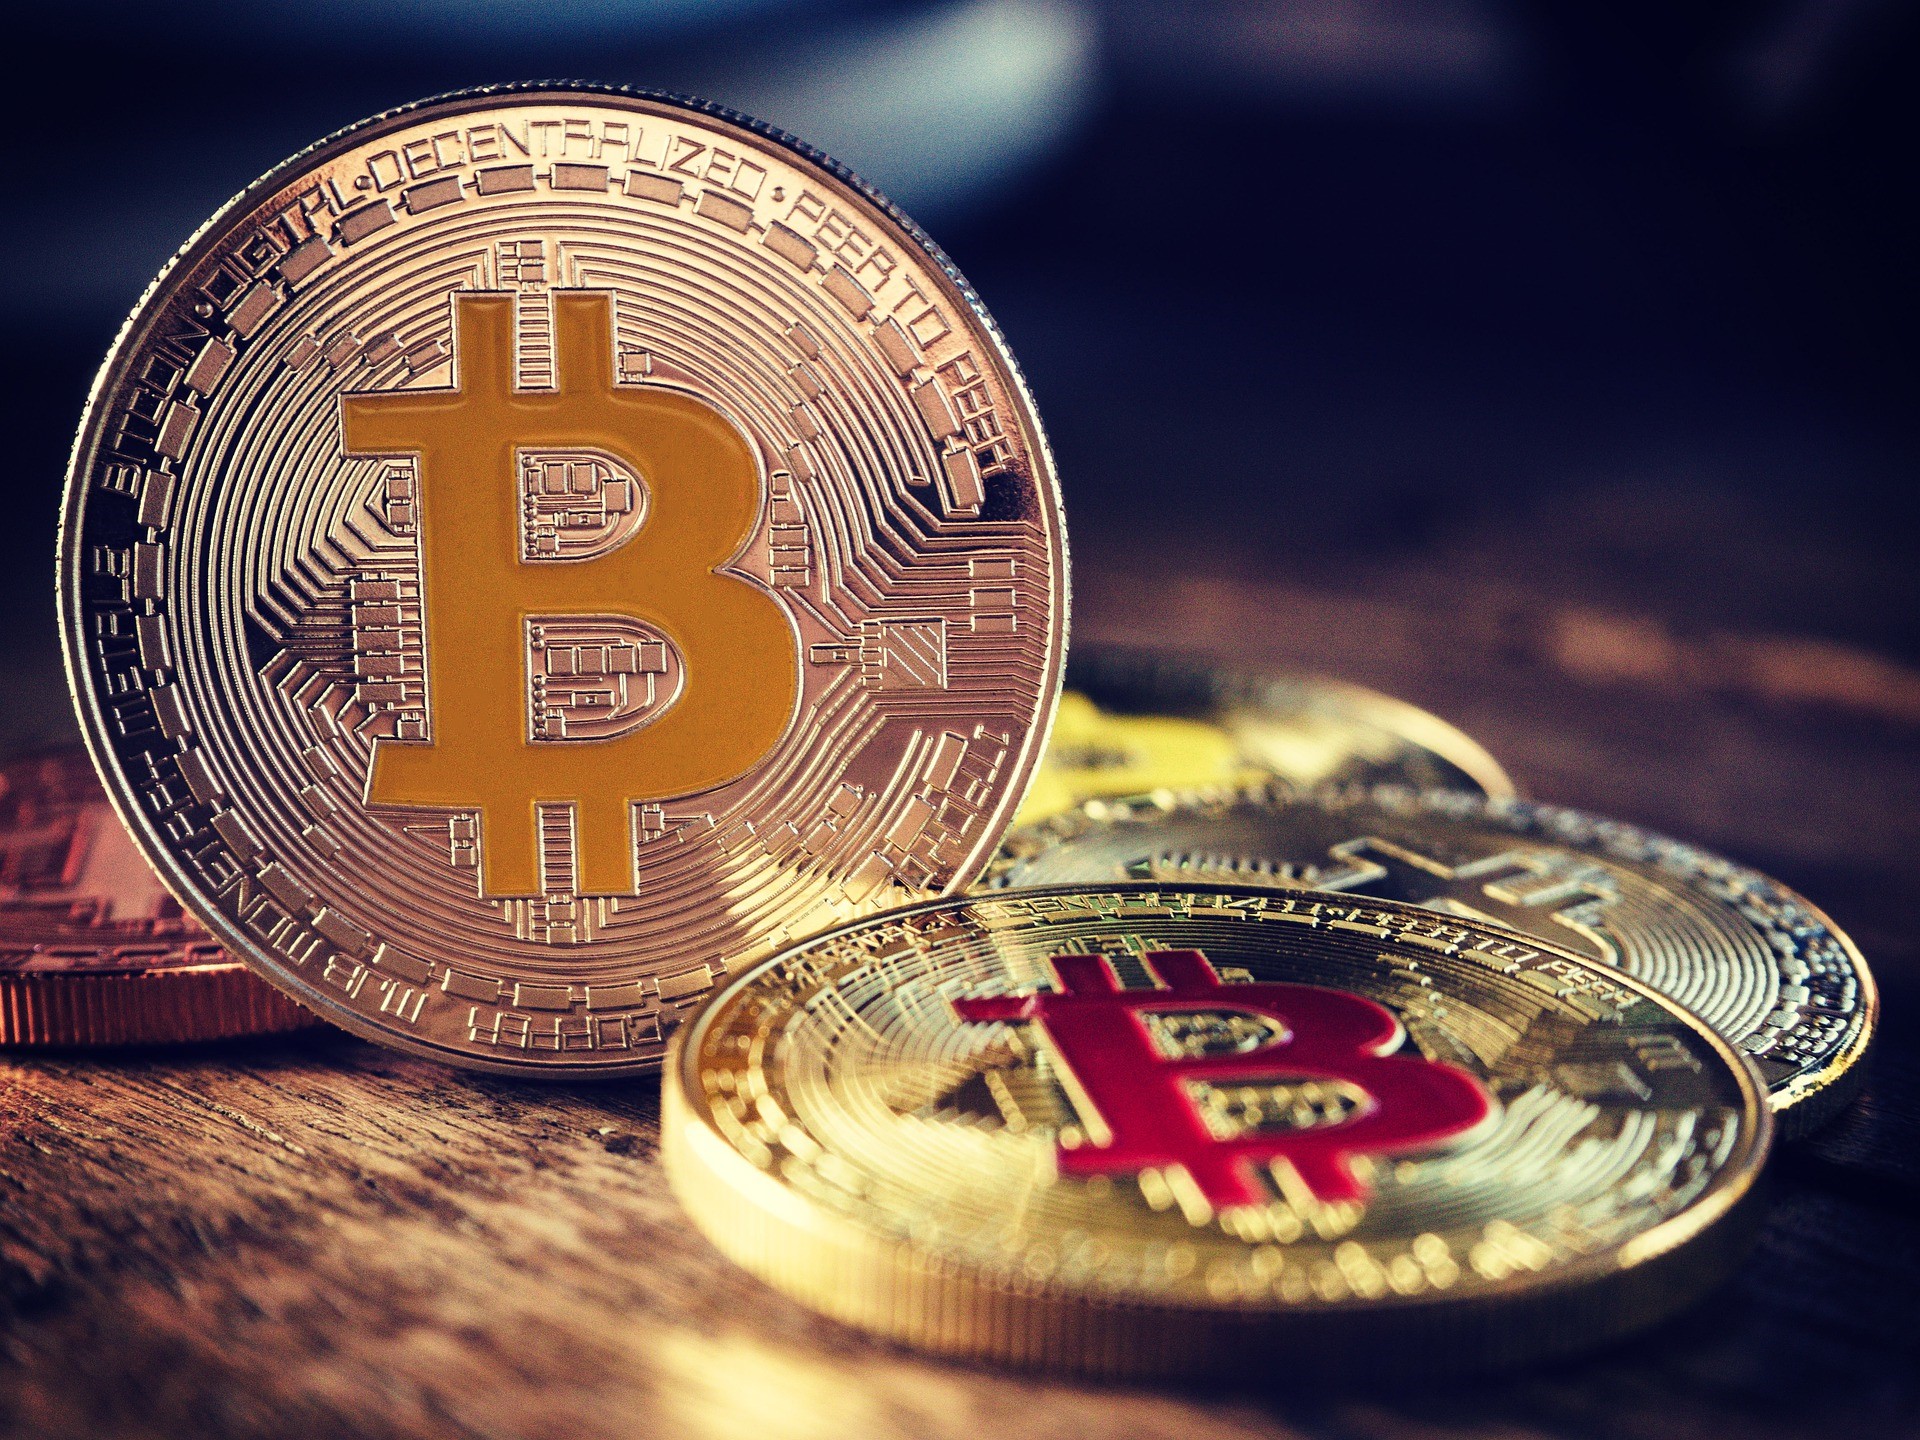 Bitcoin är en kryptovaluta. Det är en decentraliserad digital valuta utan centralbank eller enskild administratör som kan skickas från användare till användare på peer-to-peer bitcoin-nätverket utan behov av mellanhänder. Transaktioner verifieras och registreras i en offentlig distribuerad reskontra som kallas blockchain. Utöver "fysiska" Bitcoin kan du också handla börshandlade produkter för Bitcoin.